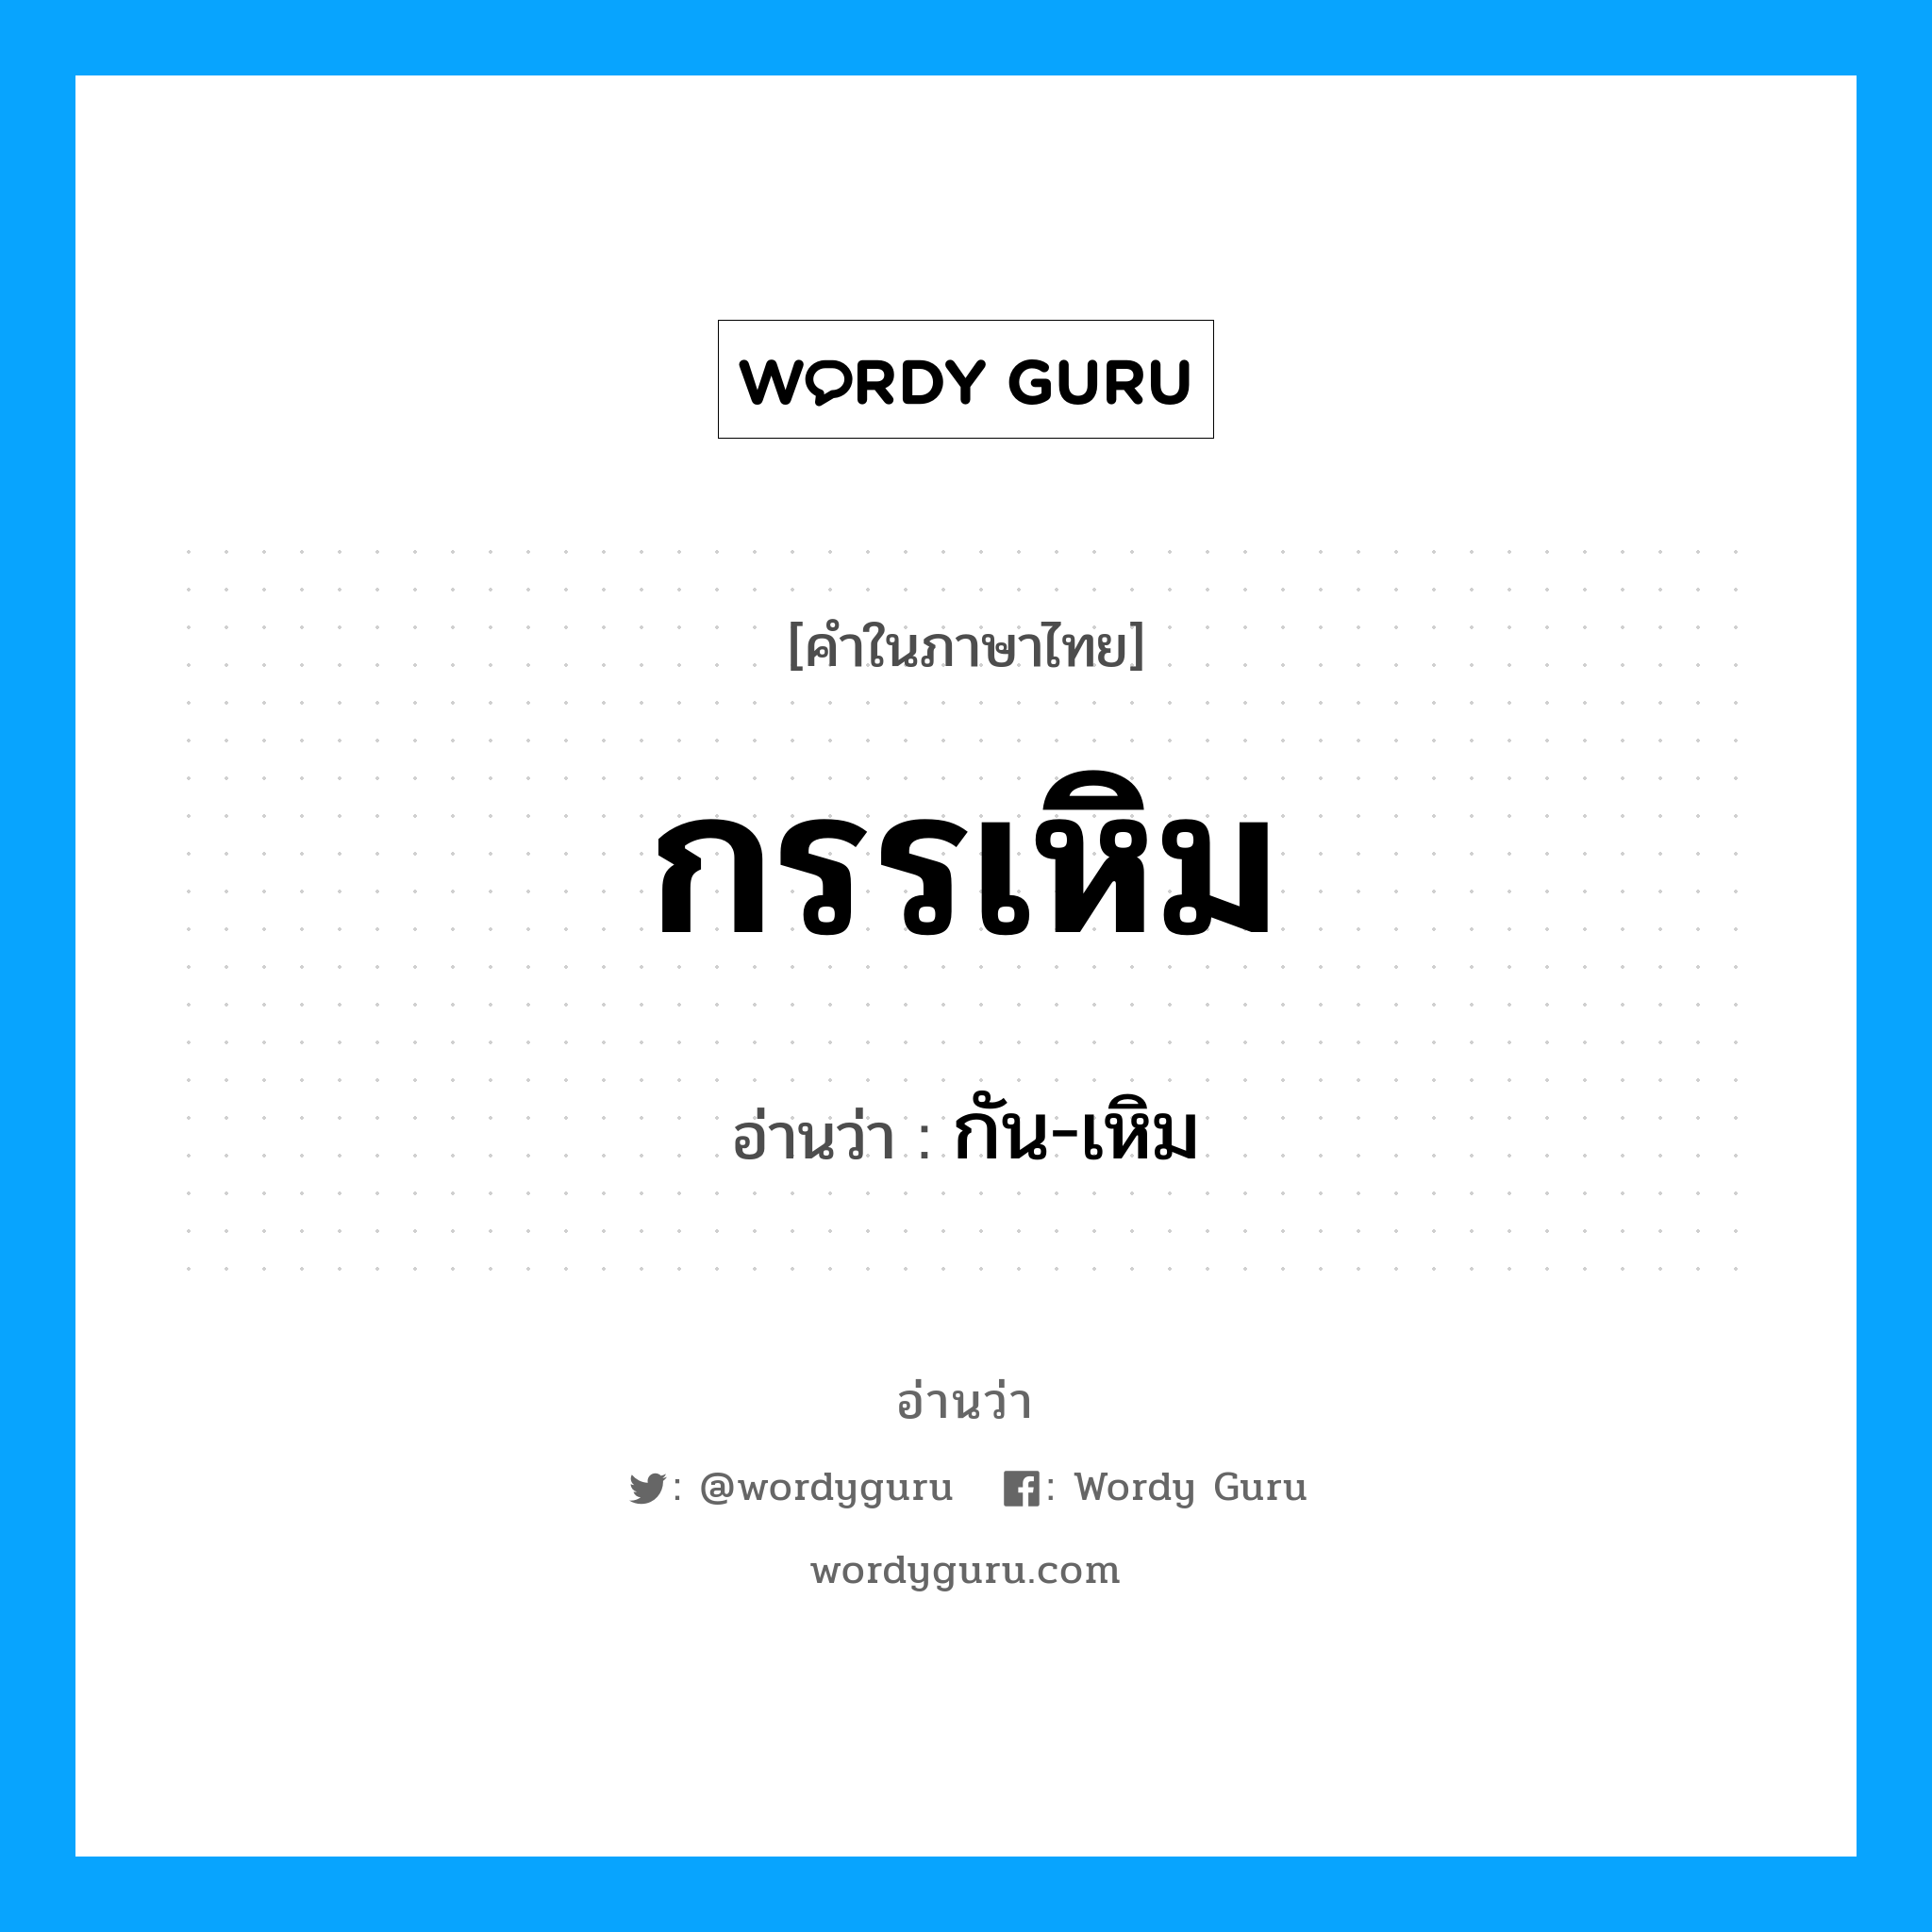 กัน-เหิม เป็นคำอ่านของคำไหน?, คำในภาษาไทย กัน-เหิม อ่านว่า กรรเหิม